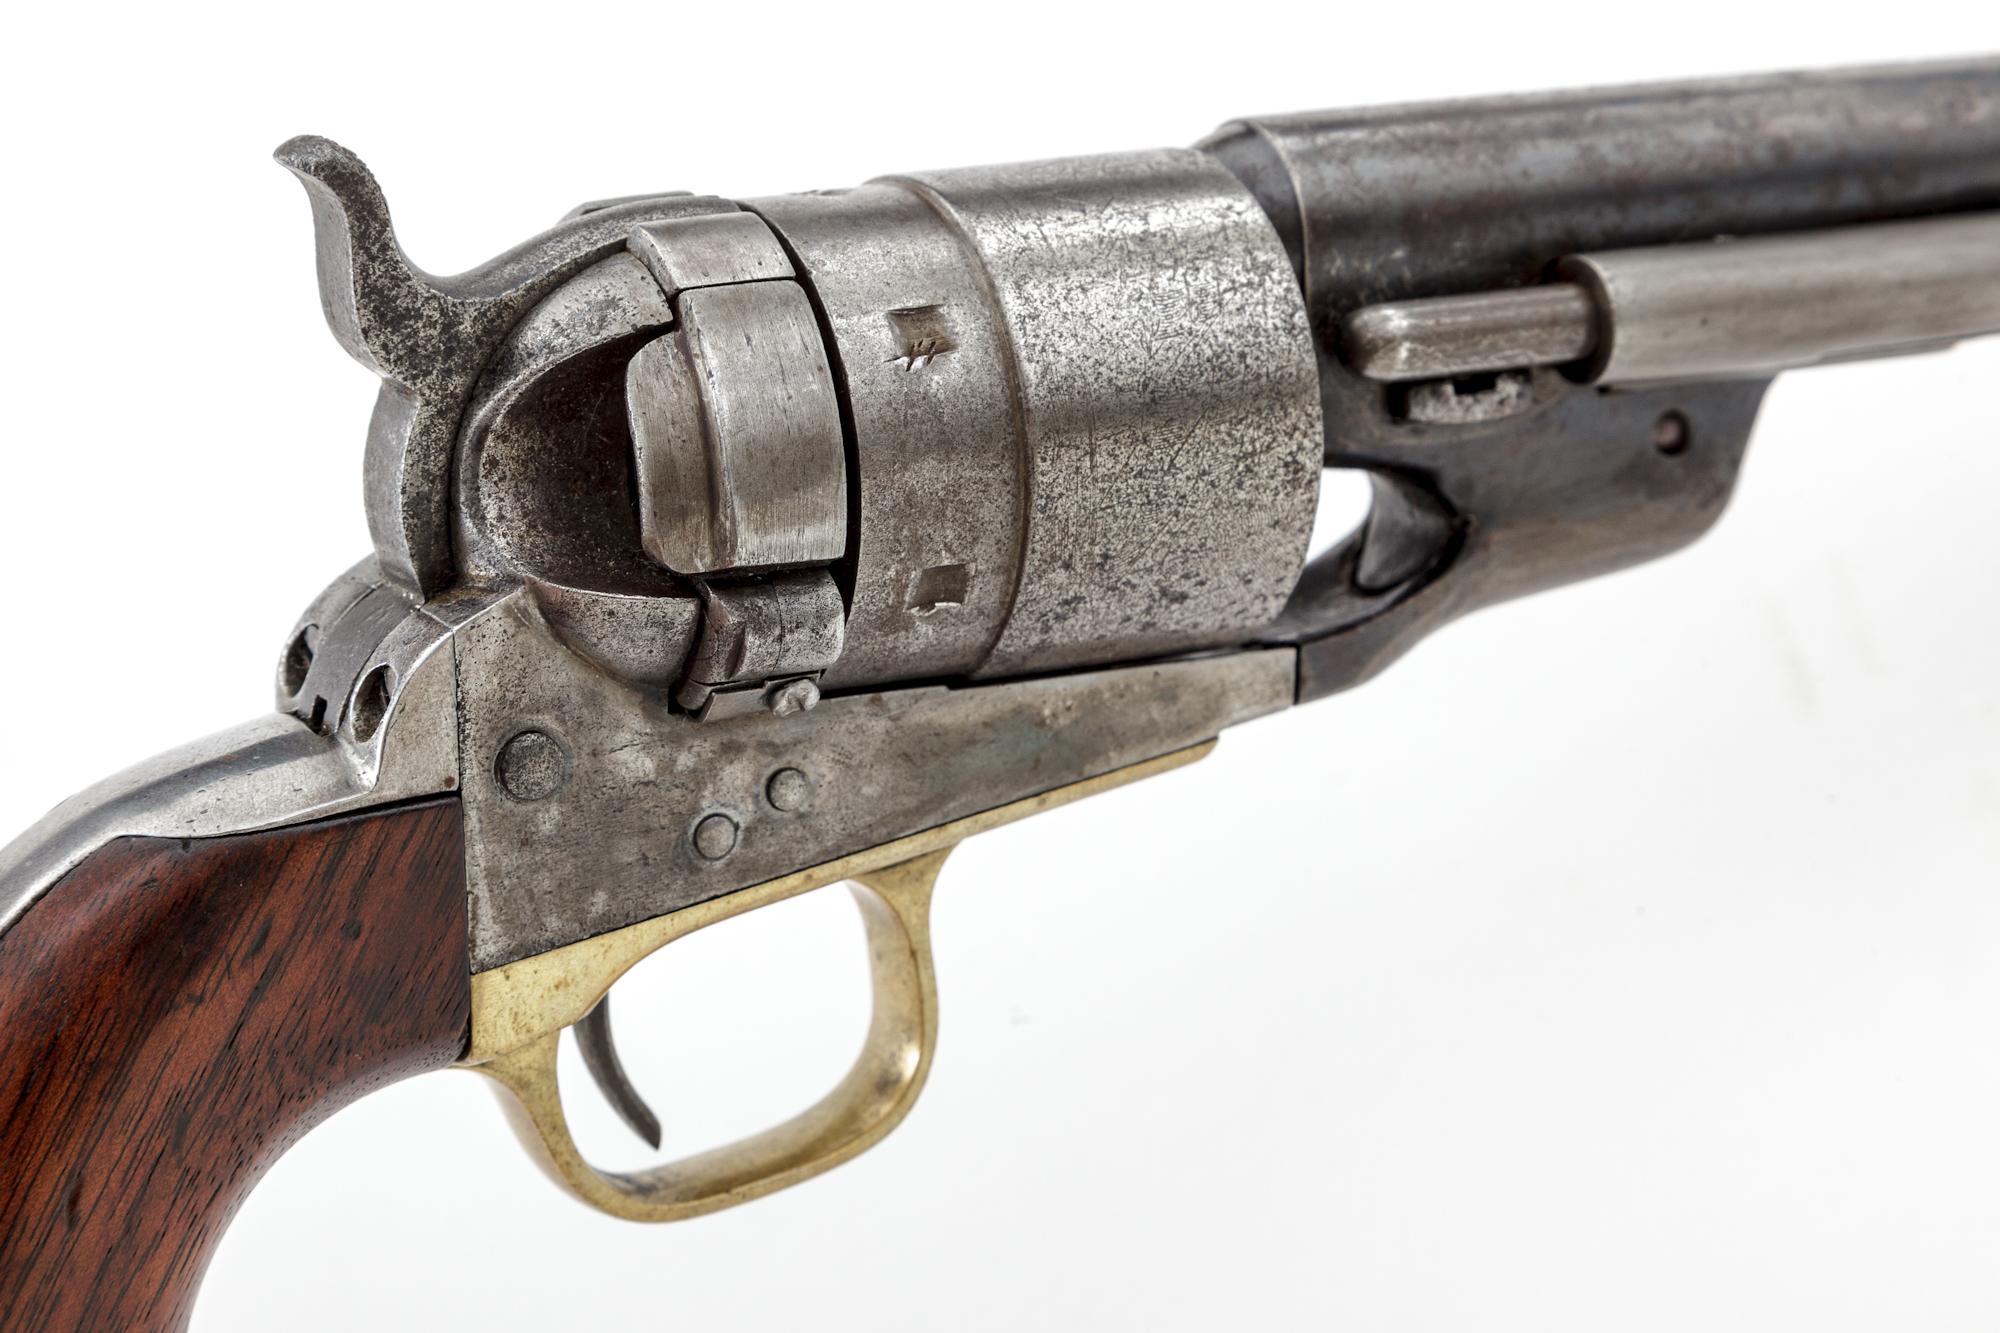 Antique Colt Transition or 2nd Model Richards Conversion Revolver